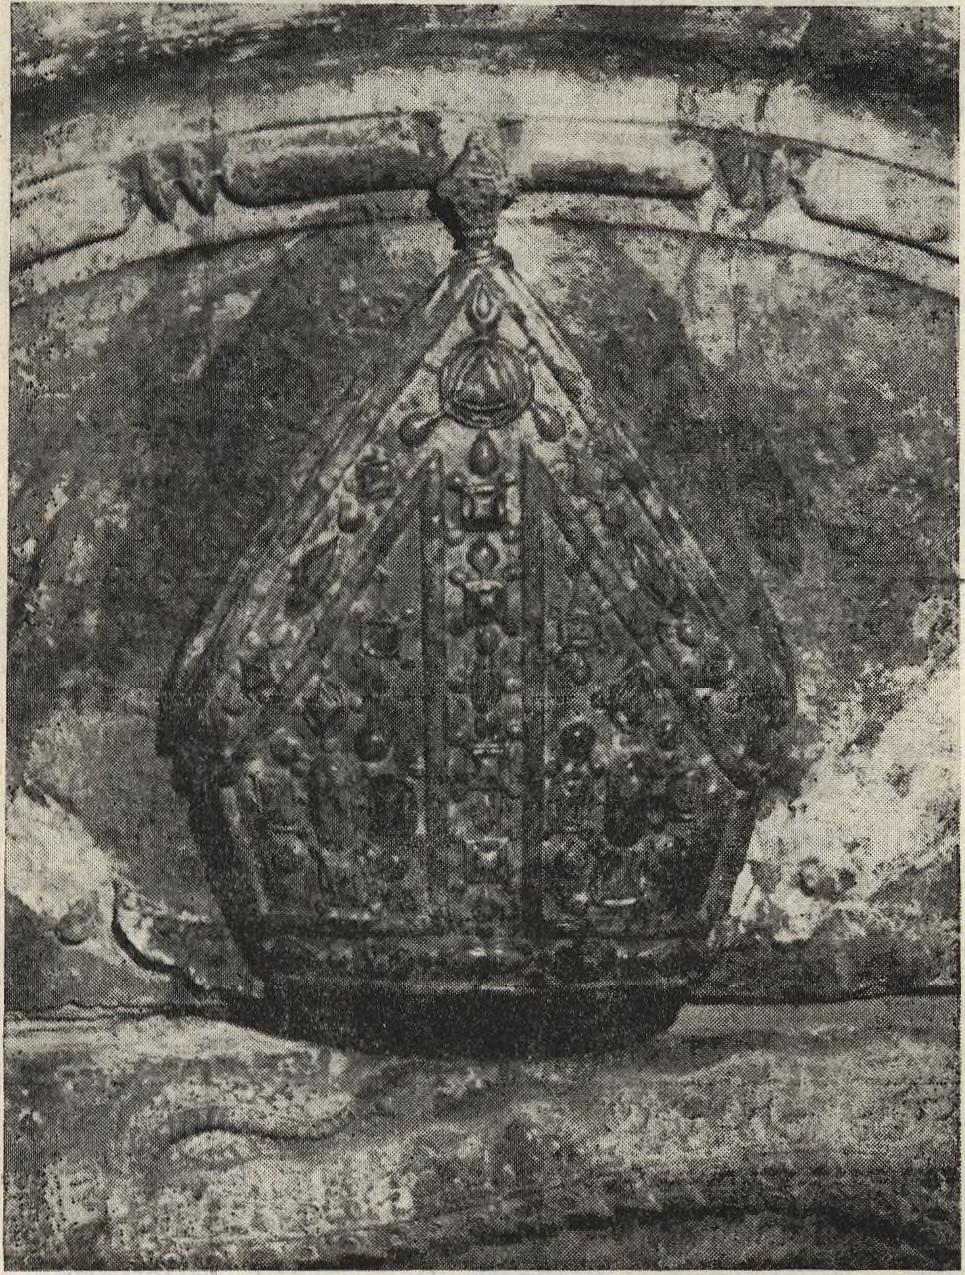 A Zsigmond-kápolna kőanyaga szemrevételezés alapján azonosnak tűnik a Bakócz-kápolna a ls ó - középső liász mészköveivel.